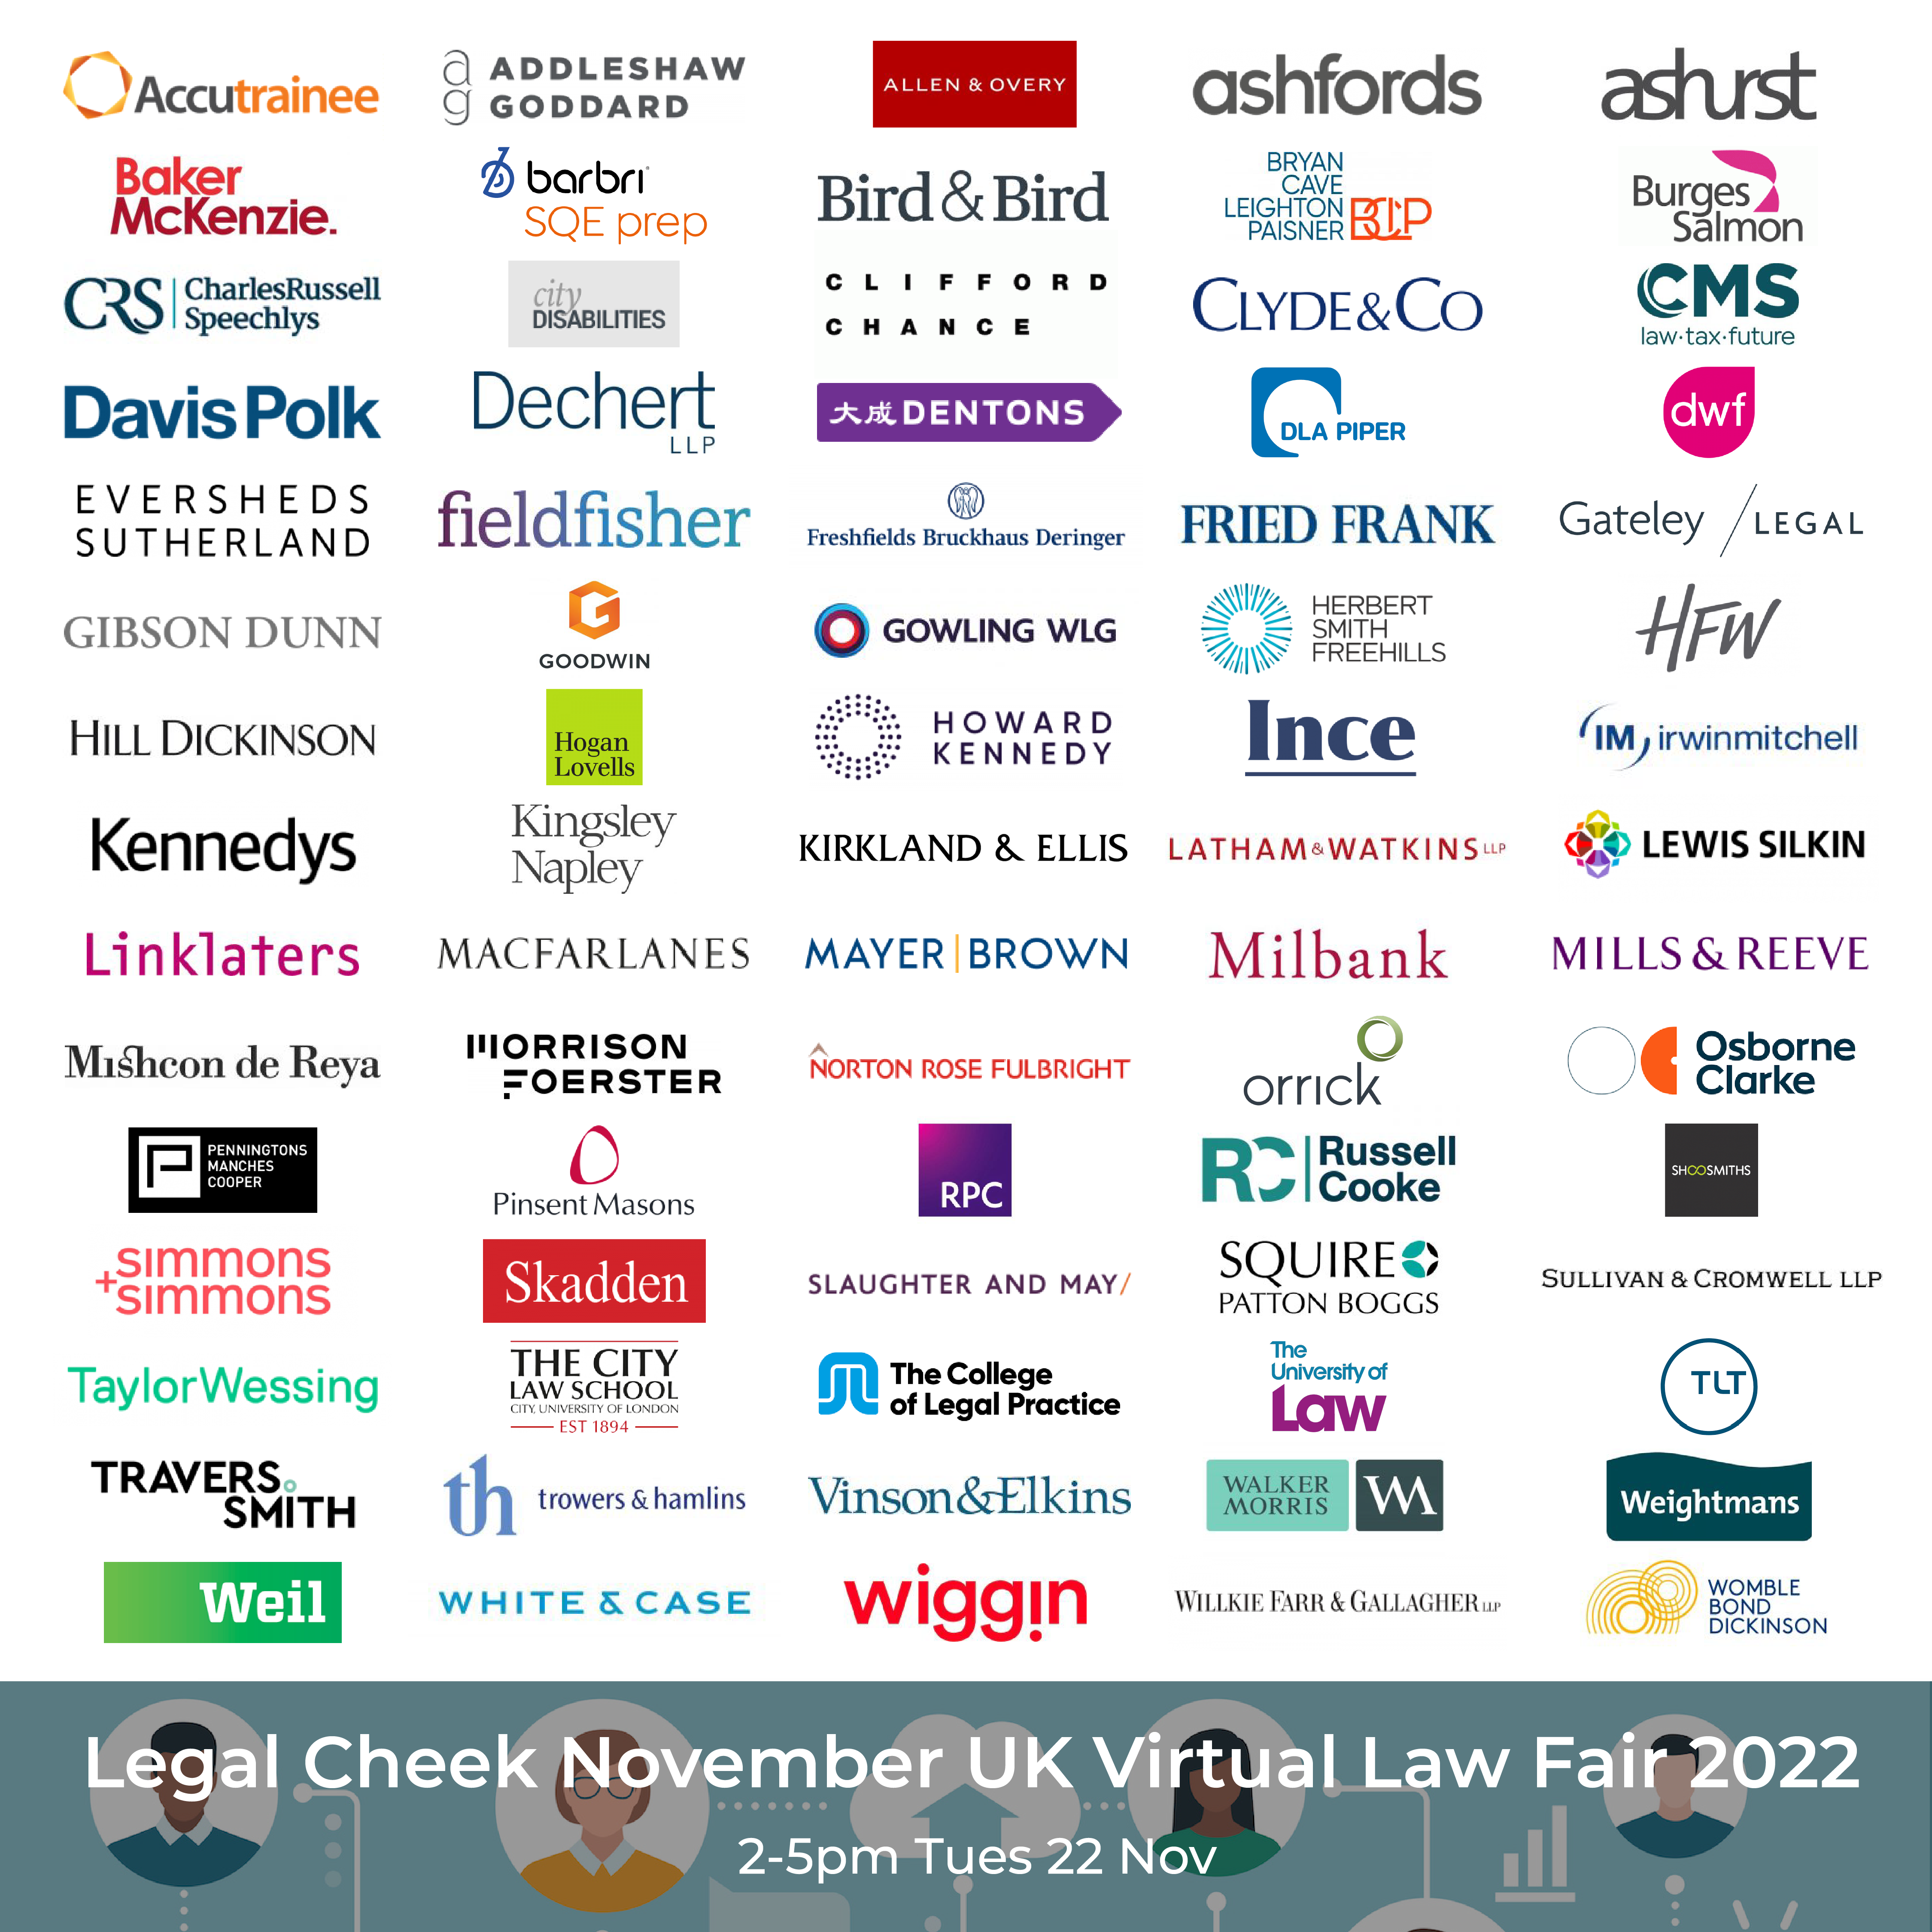 The Legal Cheek November UK Virtual Law Fair 2022